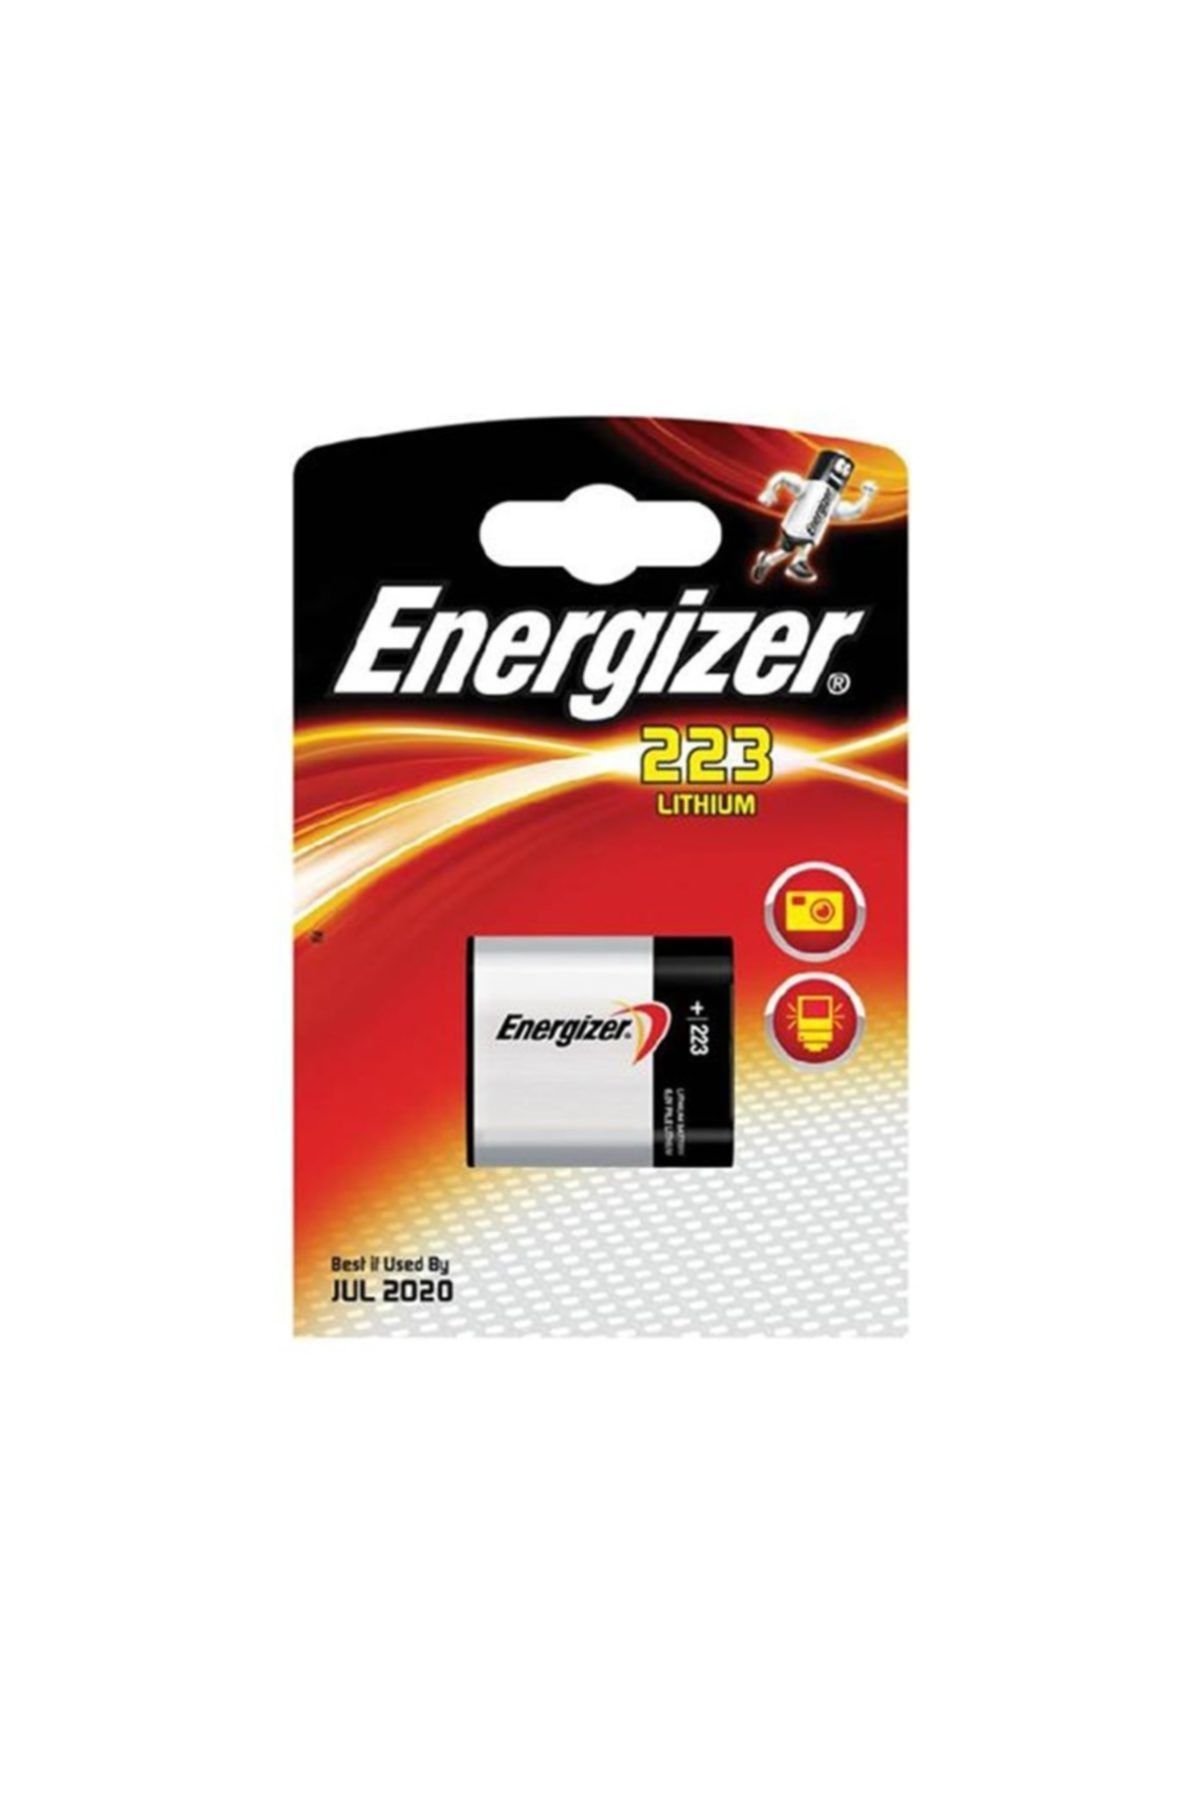 Energizer Energizer 223 Lithium Tekli Pil